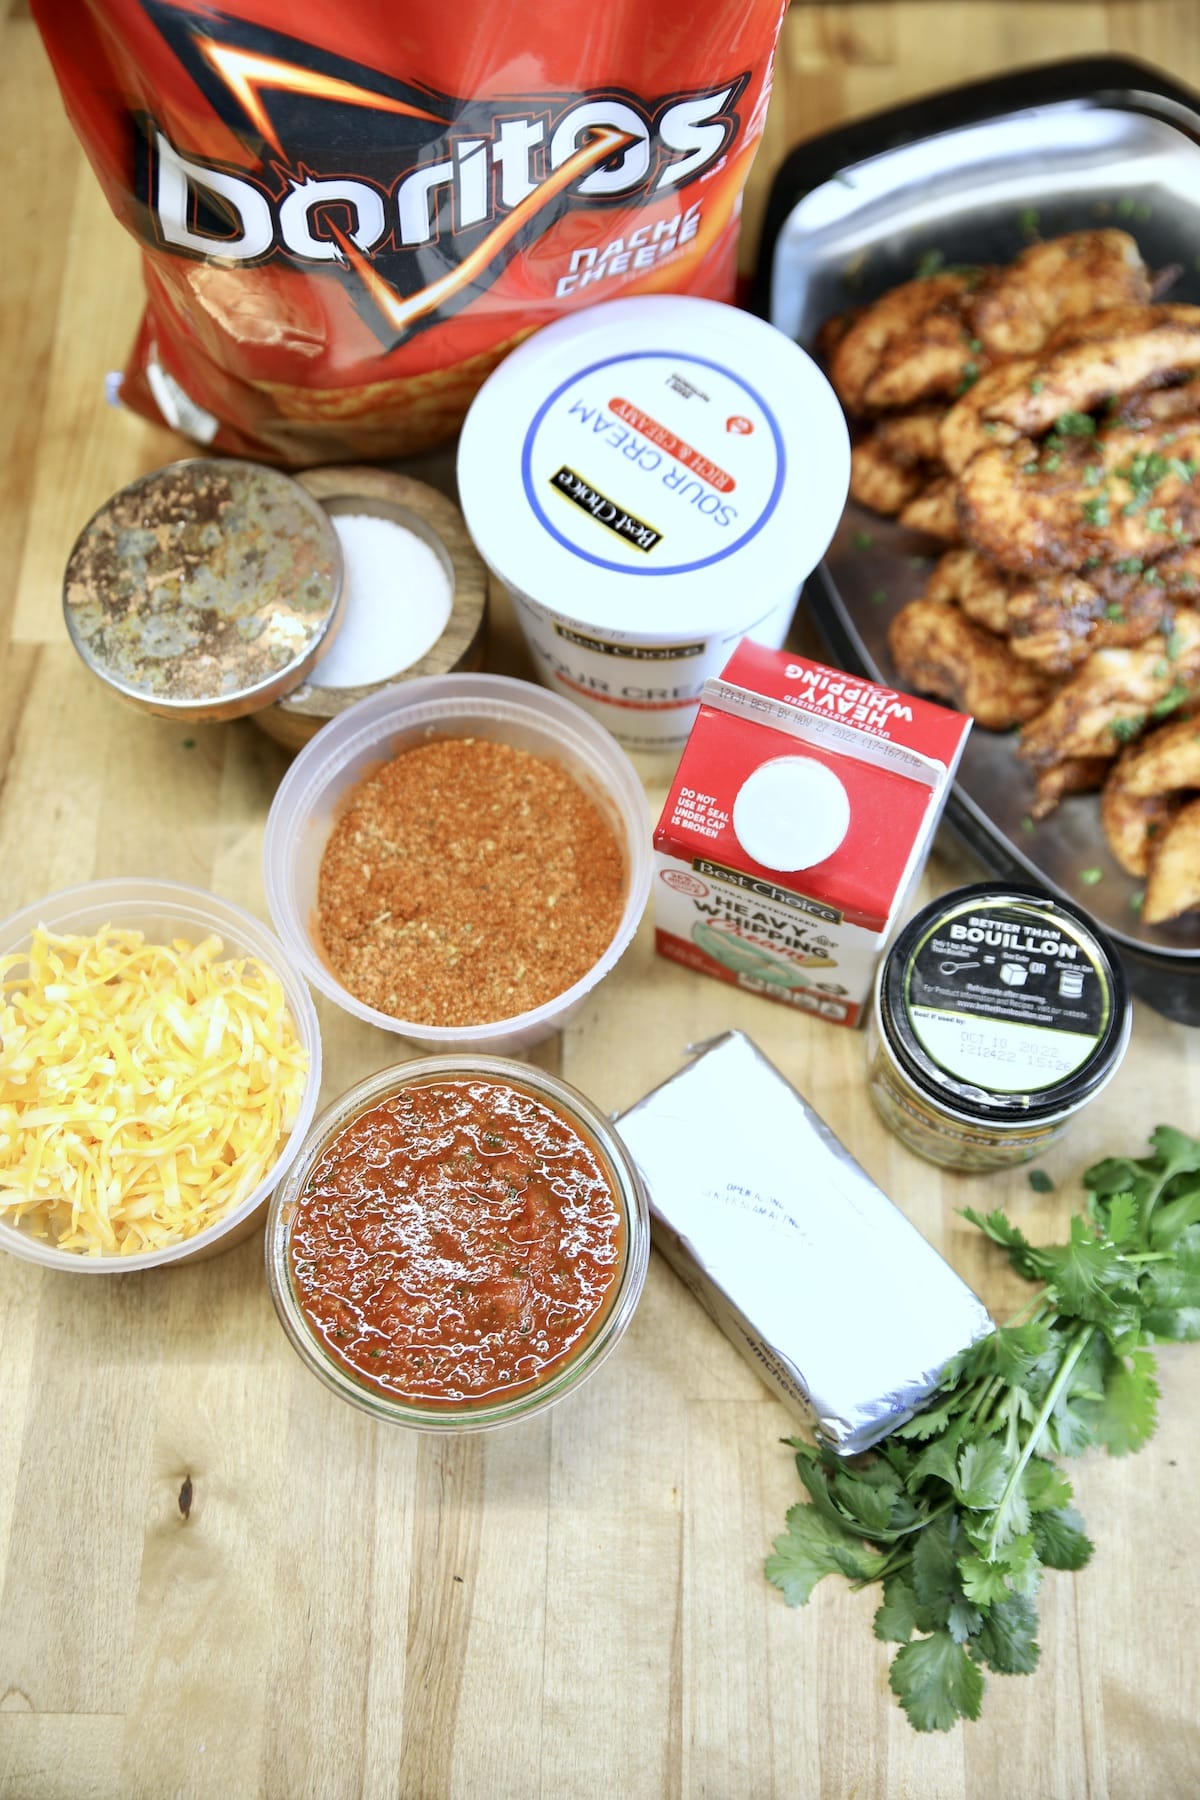 Ingredients for Doritos chicken casserole.